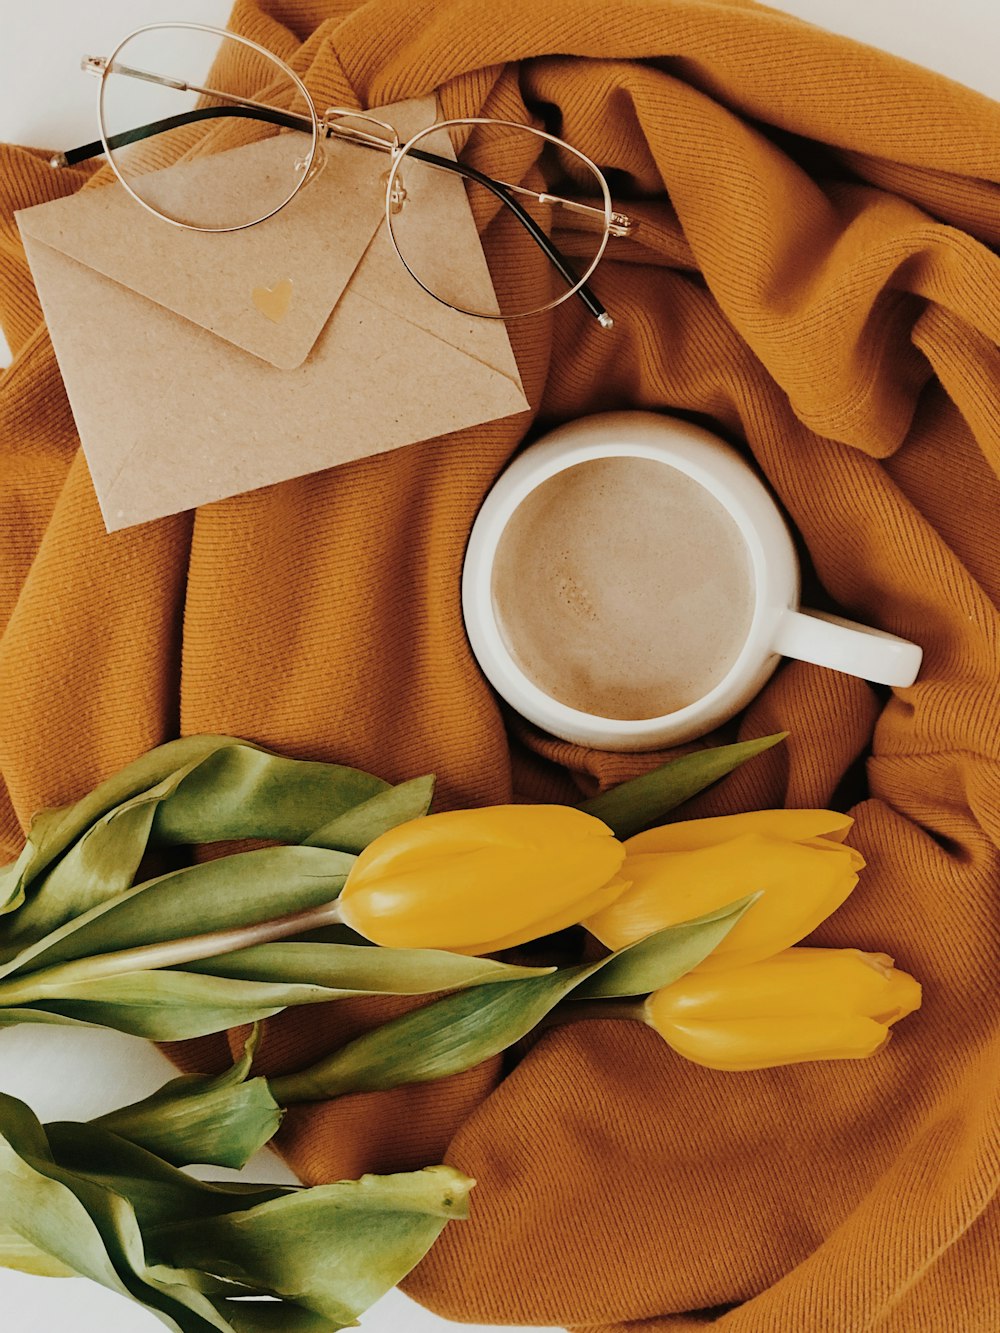 tazza, occhiali, fiori e busta su tessuto marrone